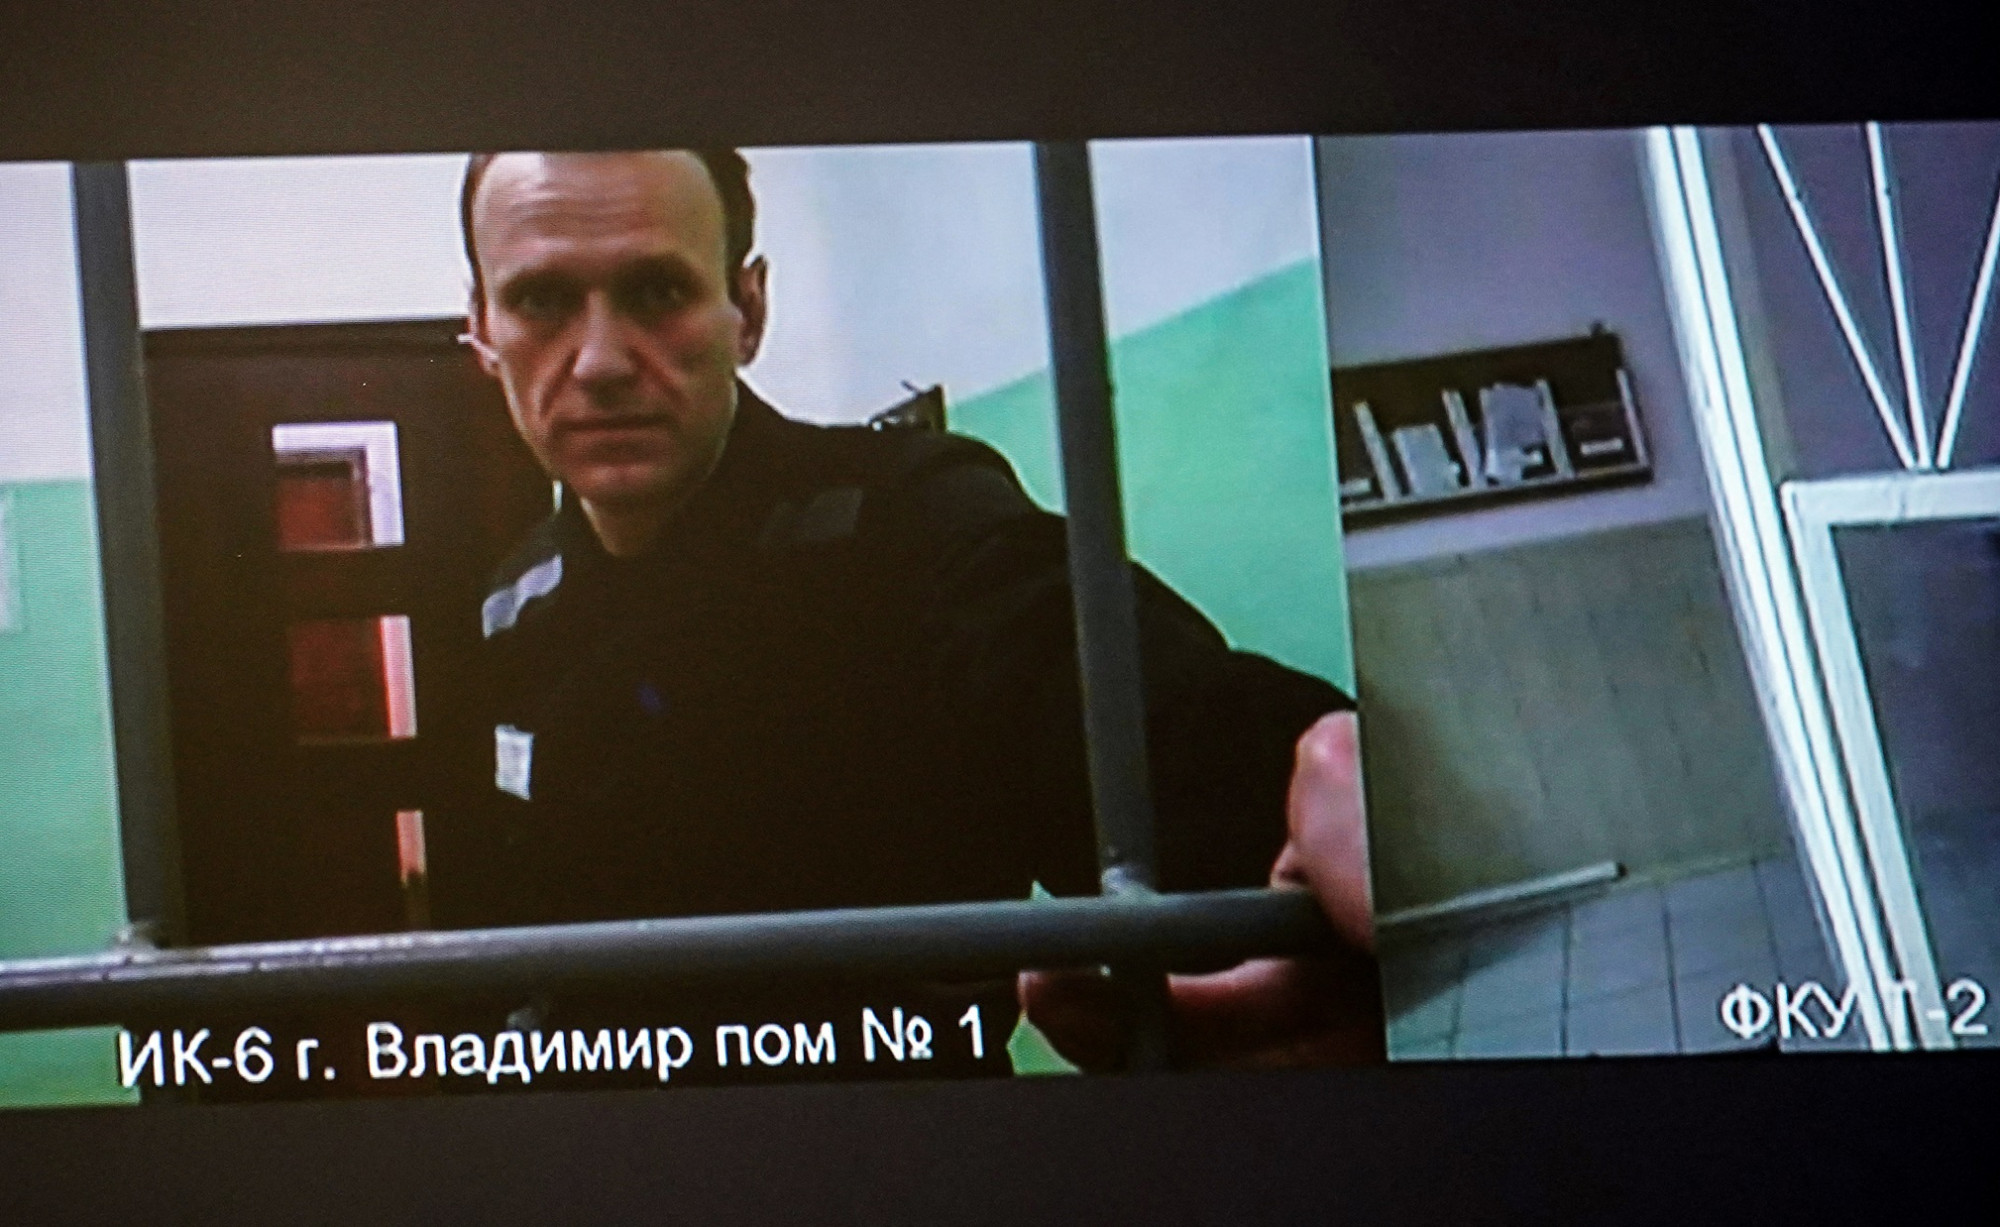 Putyin-párti énekes popslágerével ébresztik Navalnijt a börtönben minden reggel